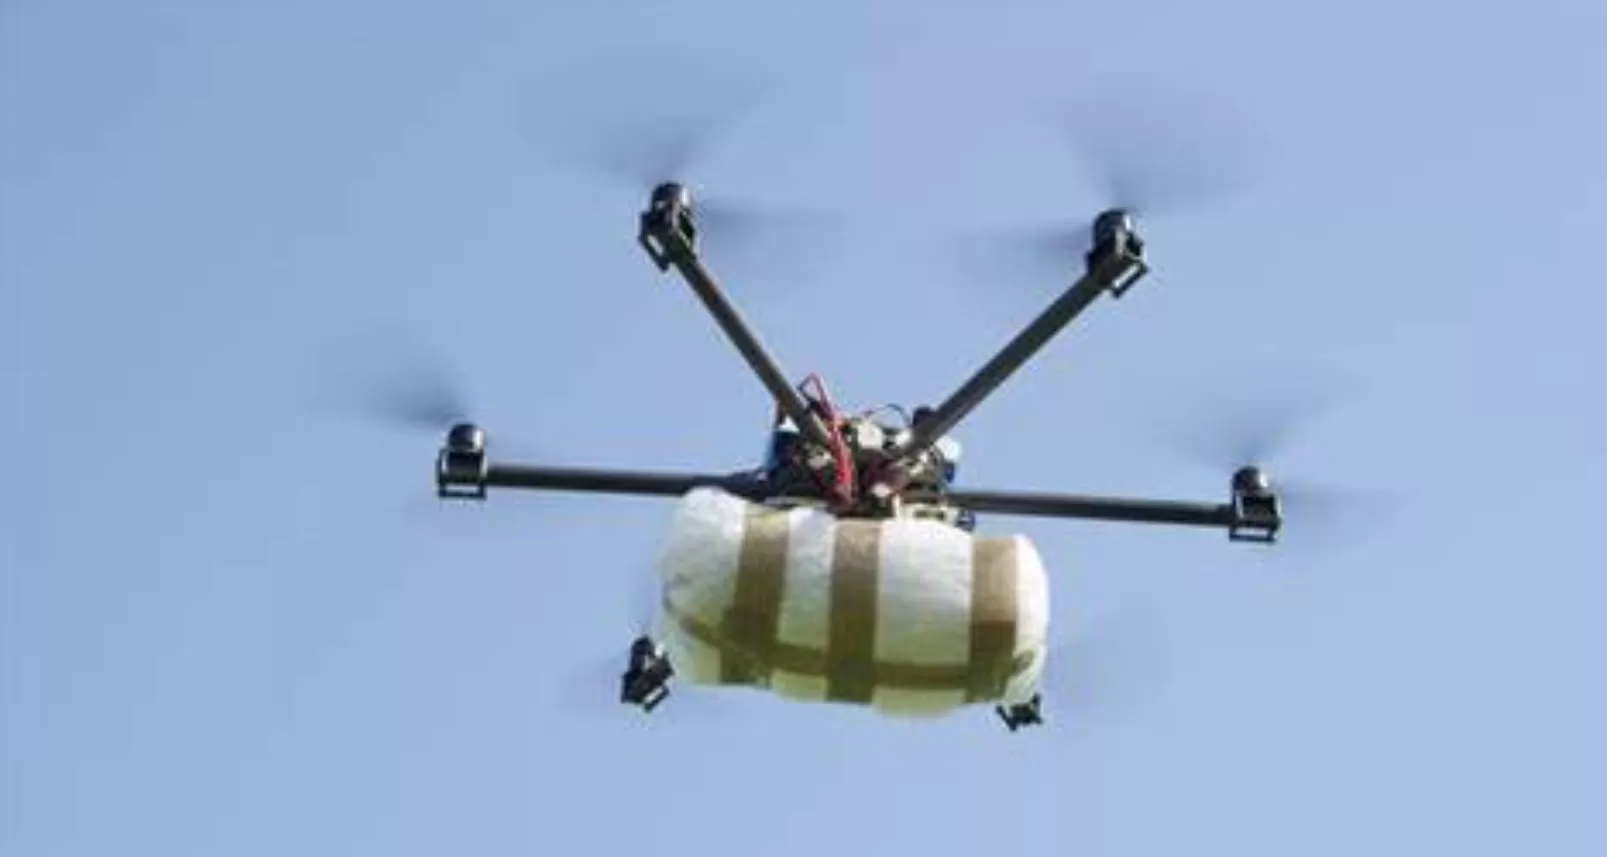 Carcere Ariano Irpino drone droga schianta